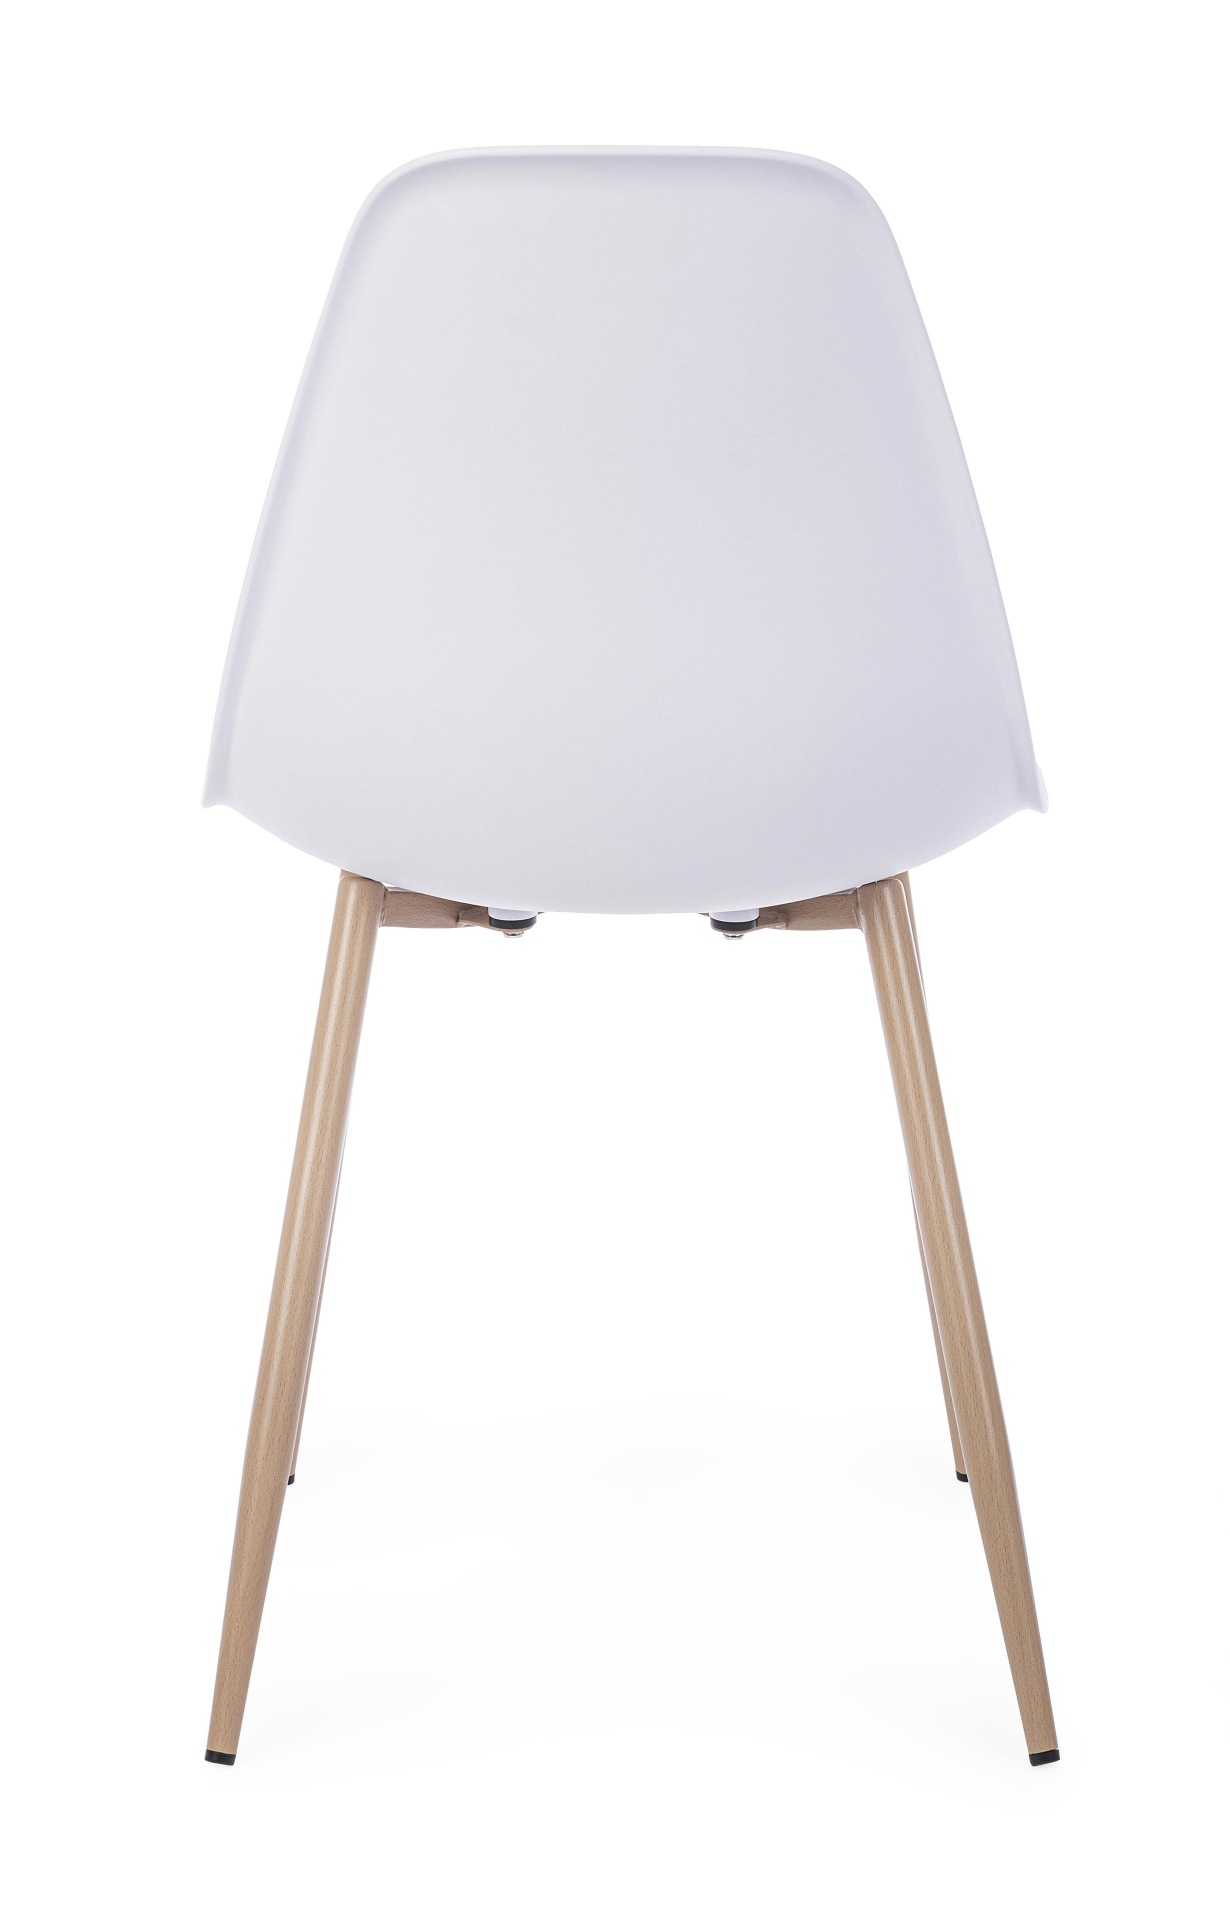 Der Stuhl Mandy überzeugt mit seinem modernem Design. Gefertigt wurde der Stuhl aus Kunststoff, welcher einen weißen Farbton besitzt. Das Gestell ist aus Metall, welches eine Holz-Optik besitzt. Die Sitzhöhe des Stuhls ist 45 cm.